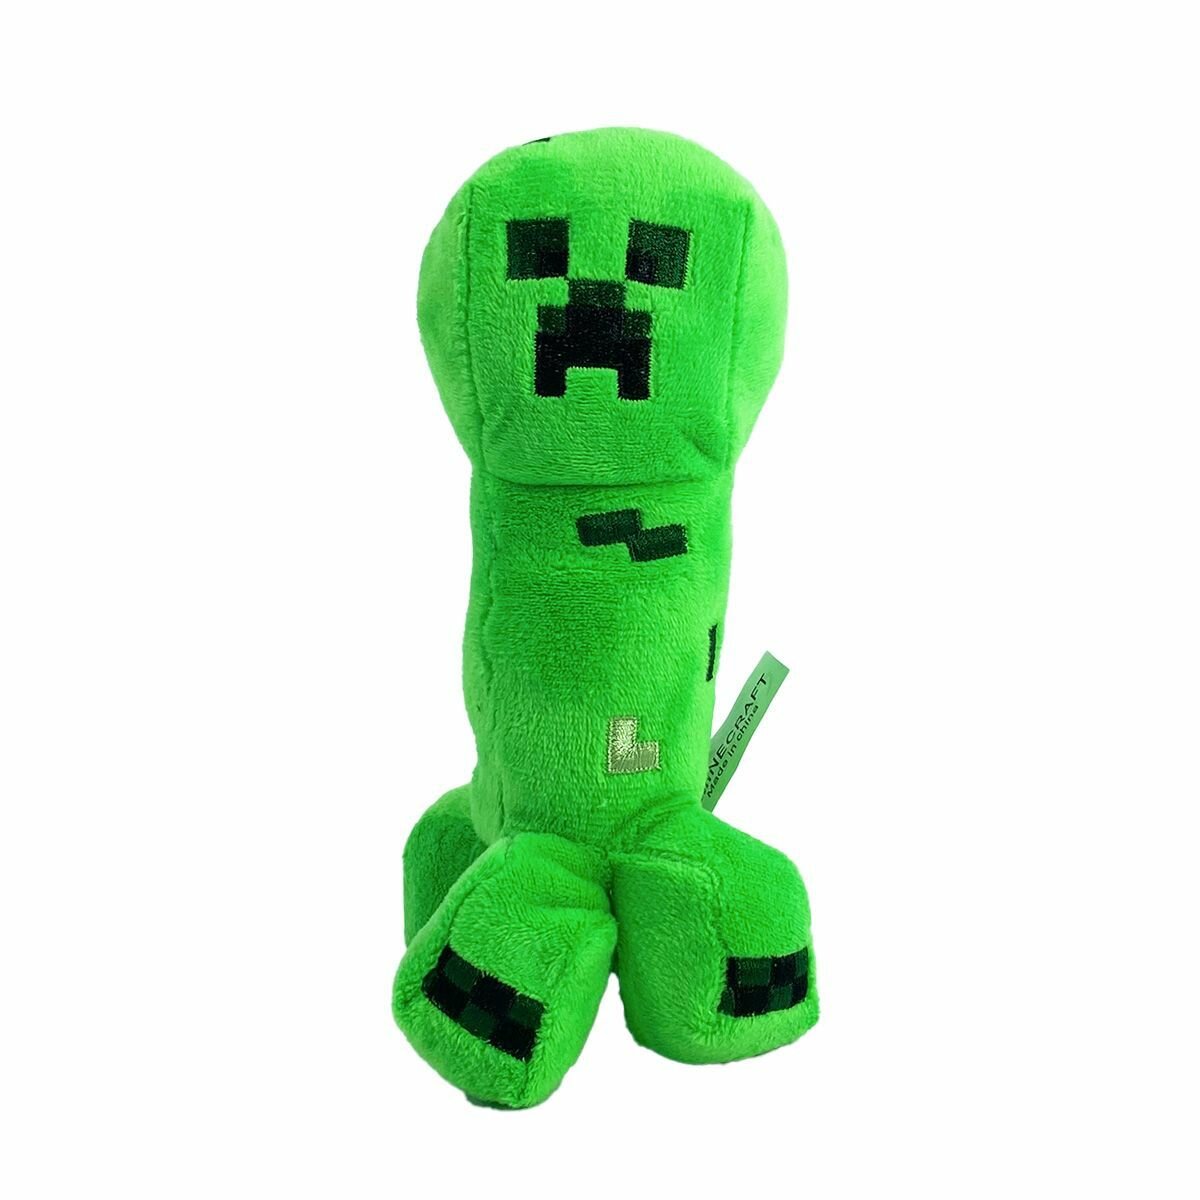 Мягкая игрушка Майнкрафт "Крипер" (Creeper), 19 см